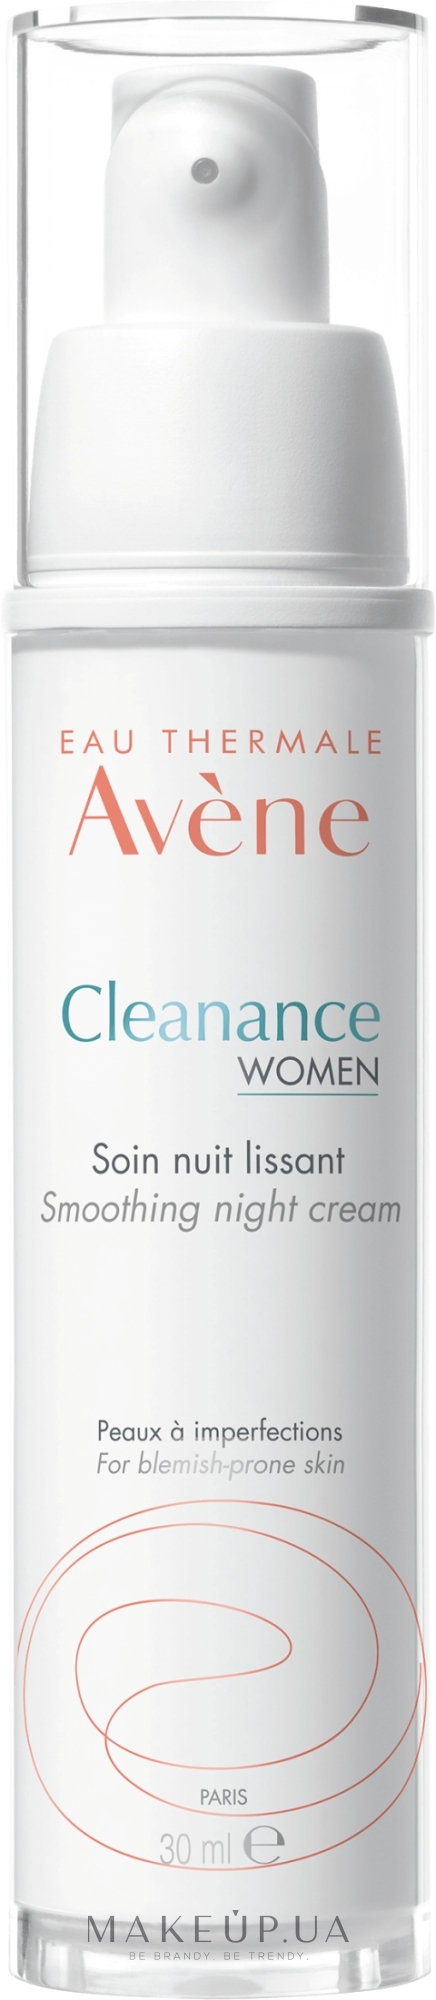 Avène Cleanance Women Soin Nuit Lissant - 30ml